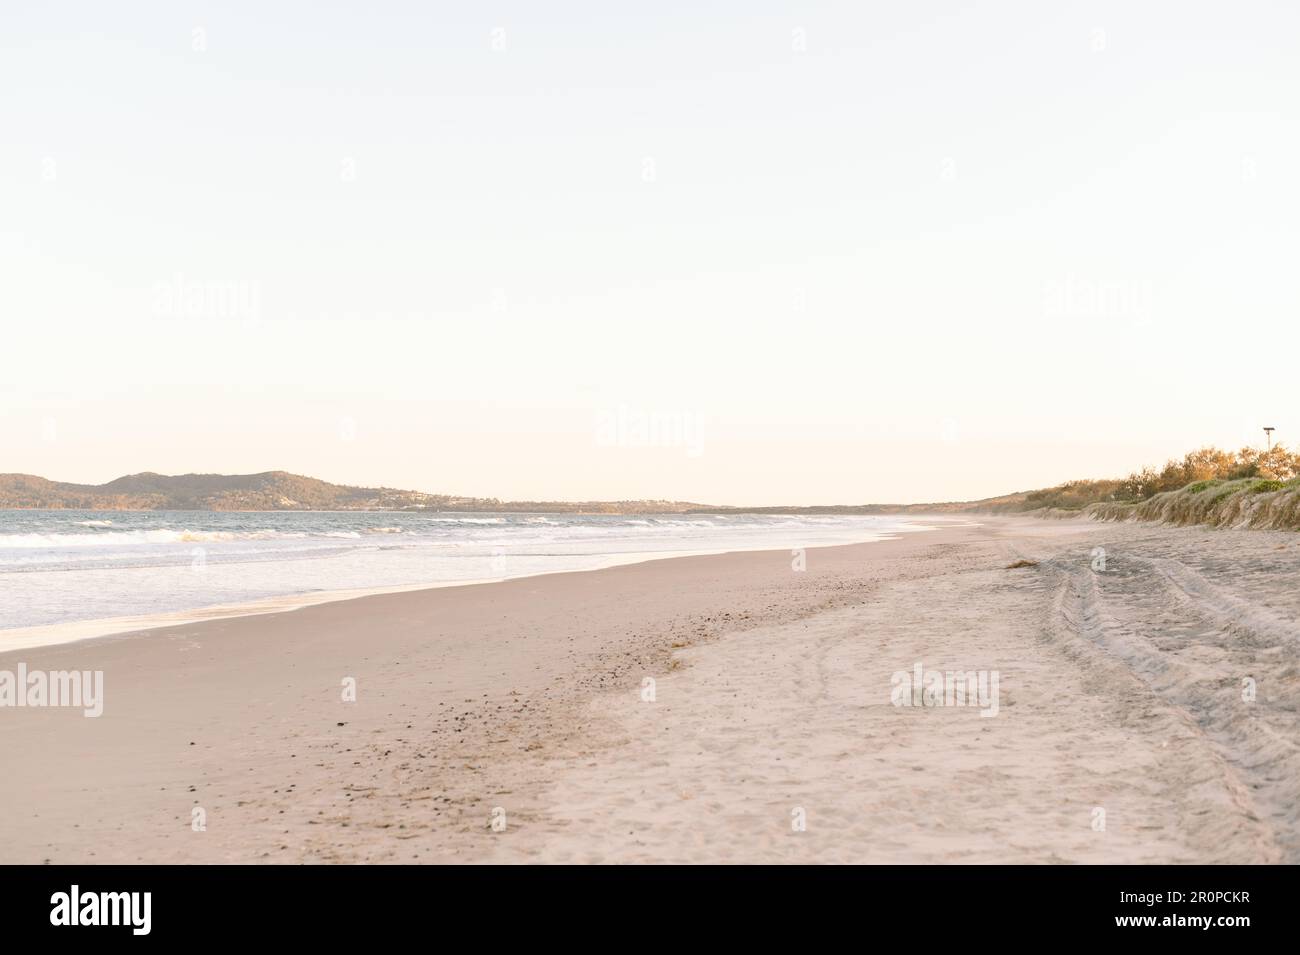 Eine friedliche Strandszene ohne Menschen in Sicht, Australien Stockfoto